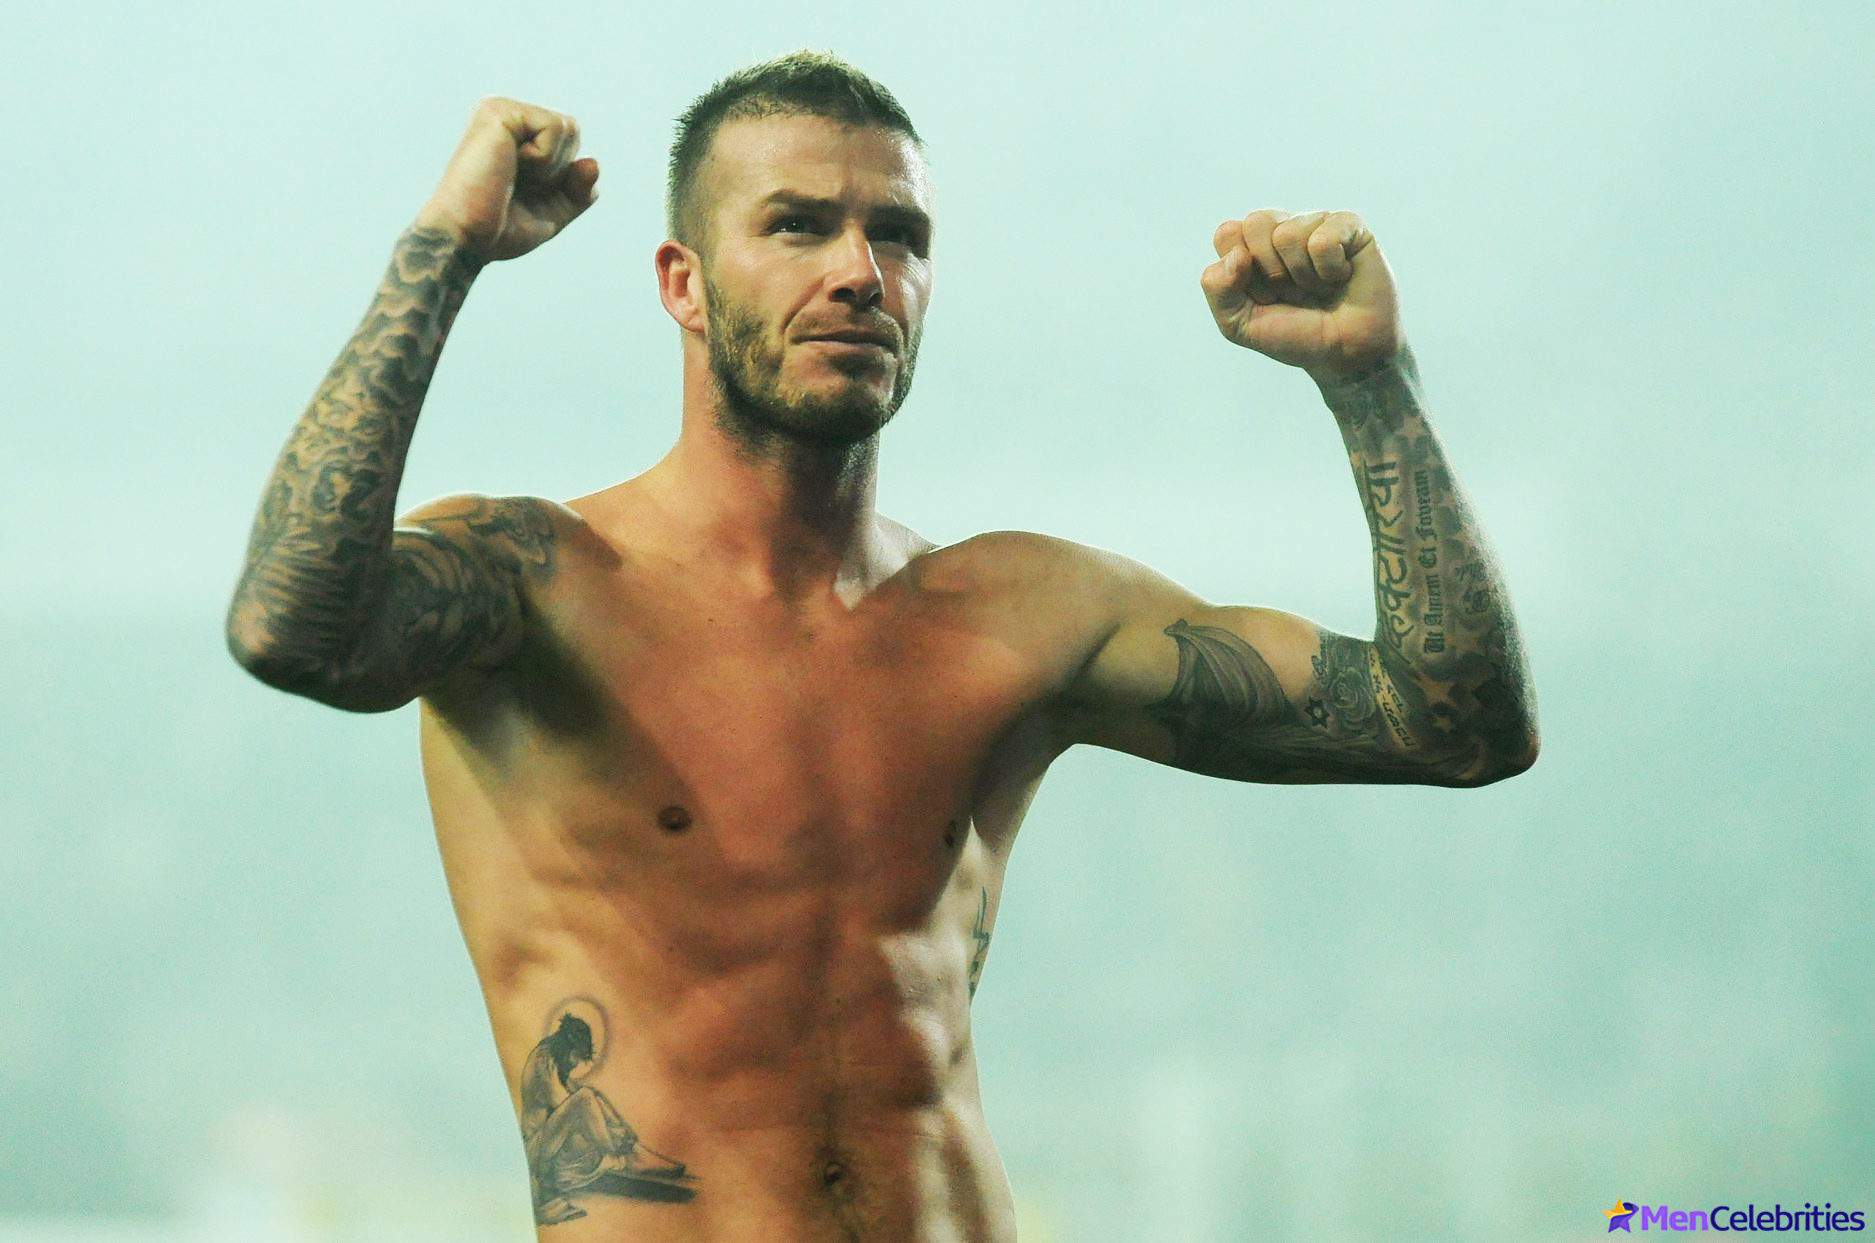 David Beckham nude penis photos.